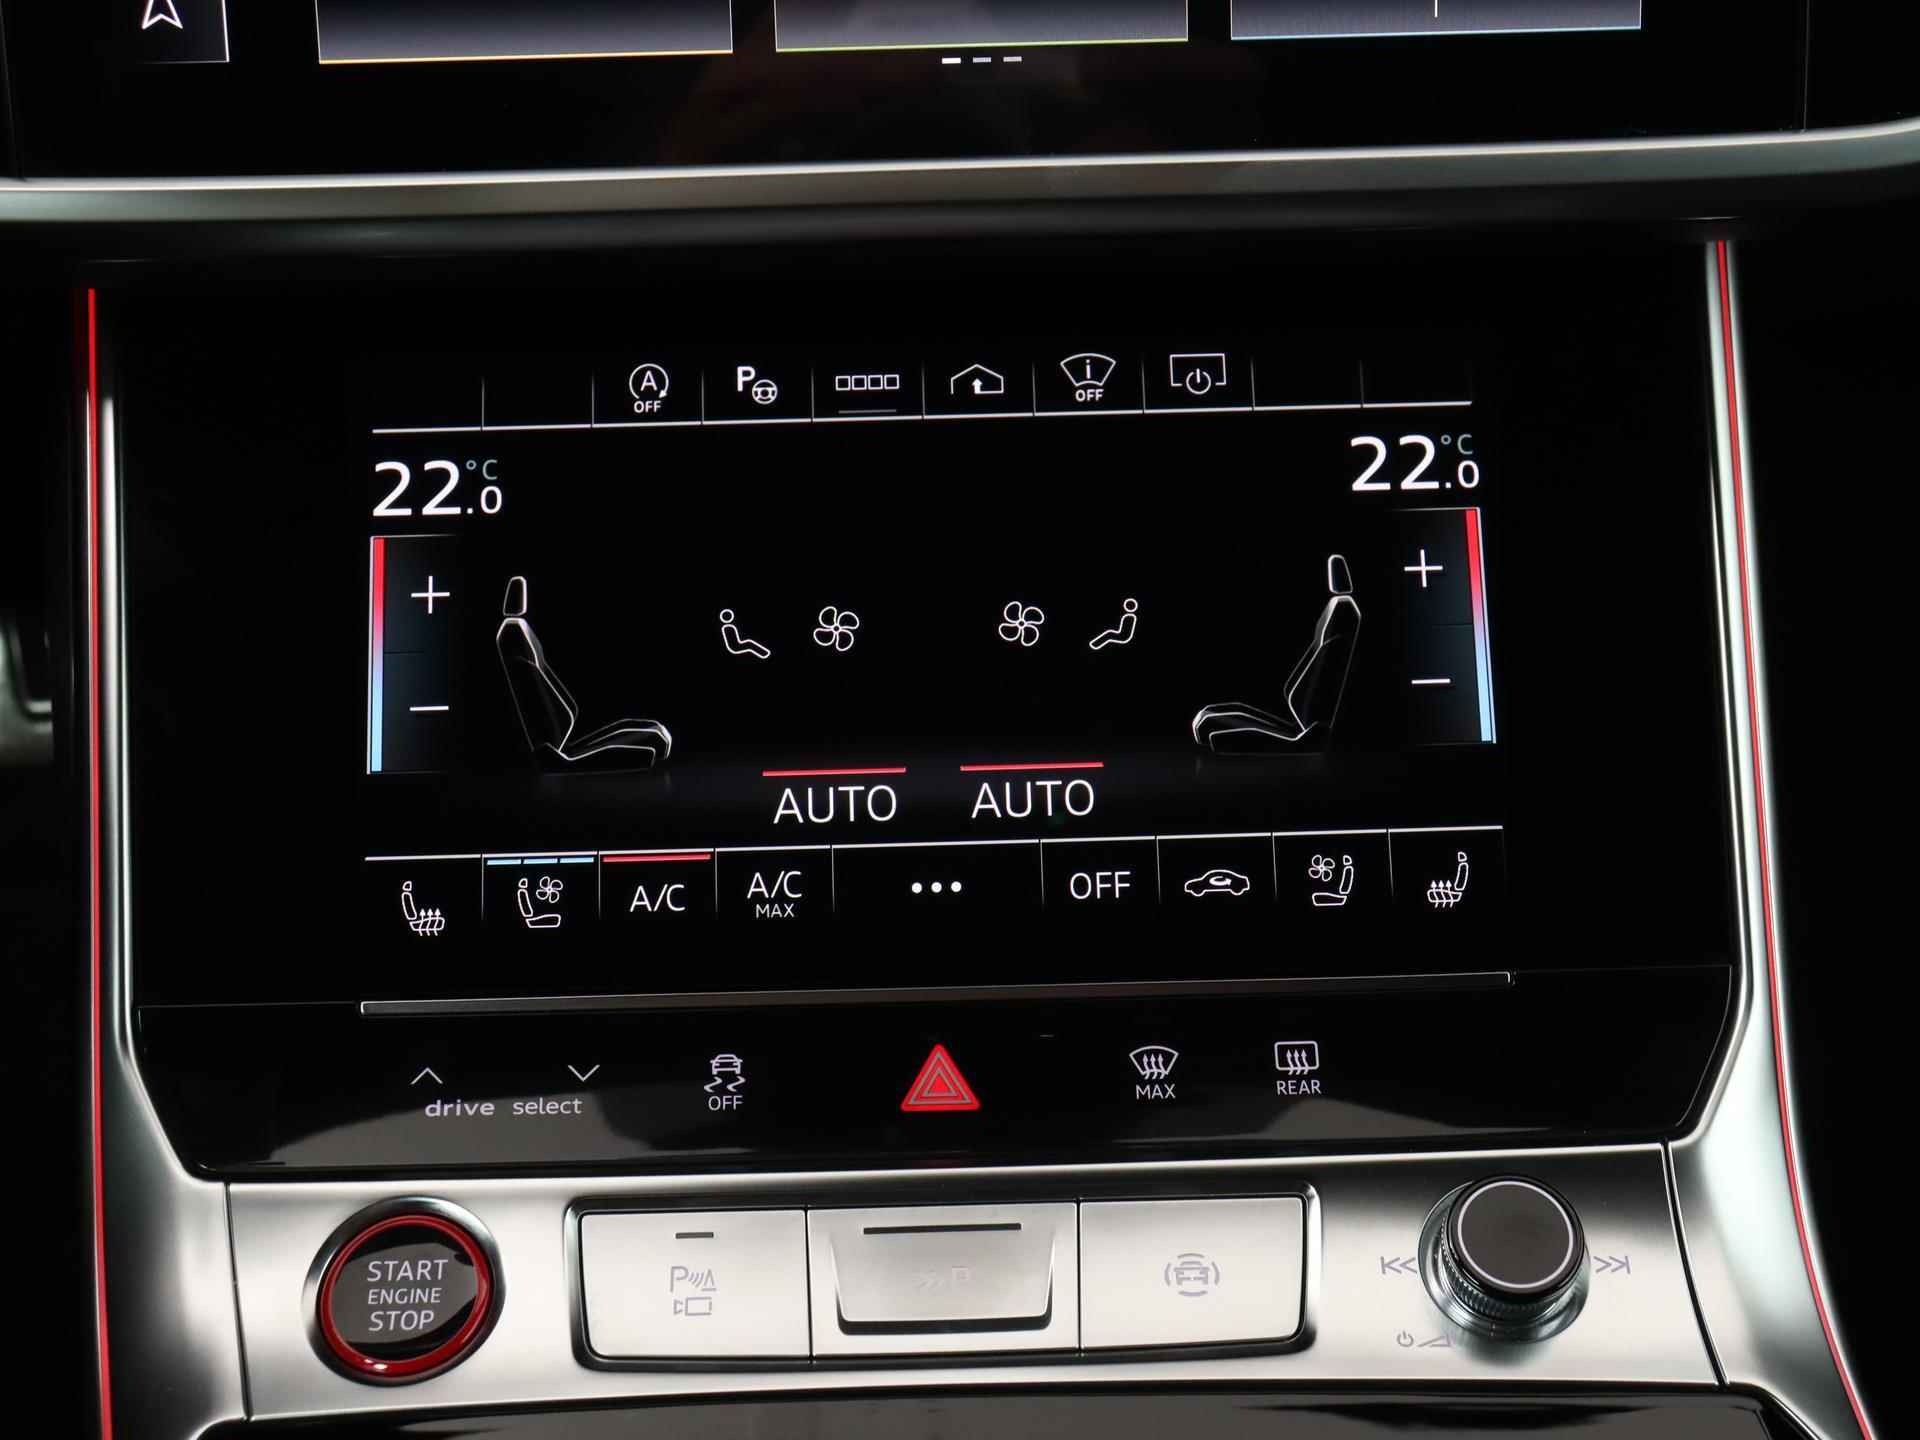 Audi RS 6 Avant TFSI quattro 600 PK | Head-up display | Bang & Olufsen Soundsystem | 22 inch lm velgen | RS Dynamic Pakket Plus | RS Design pakket Rood |Optiekpakket Zwart Plus | Panorama dak | RS Sportuitlaat | Keramische remschijven Rood | RS Sportonderstel Plus | Servosluiting deuren | Nu € 36.129,- ACTIEKORTING! | DIRECT LEVERBAAR! | - 14/35